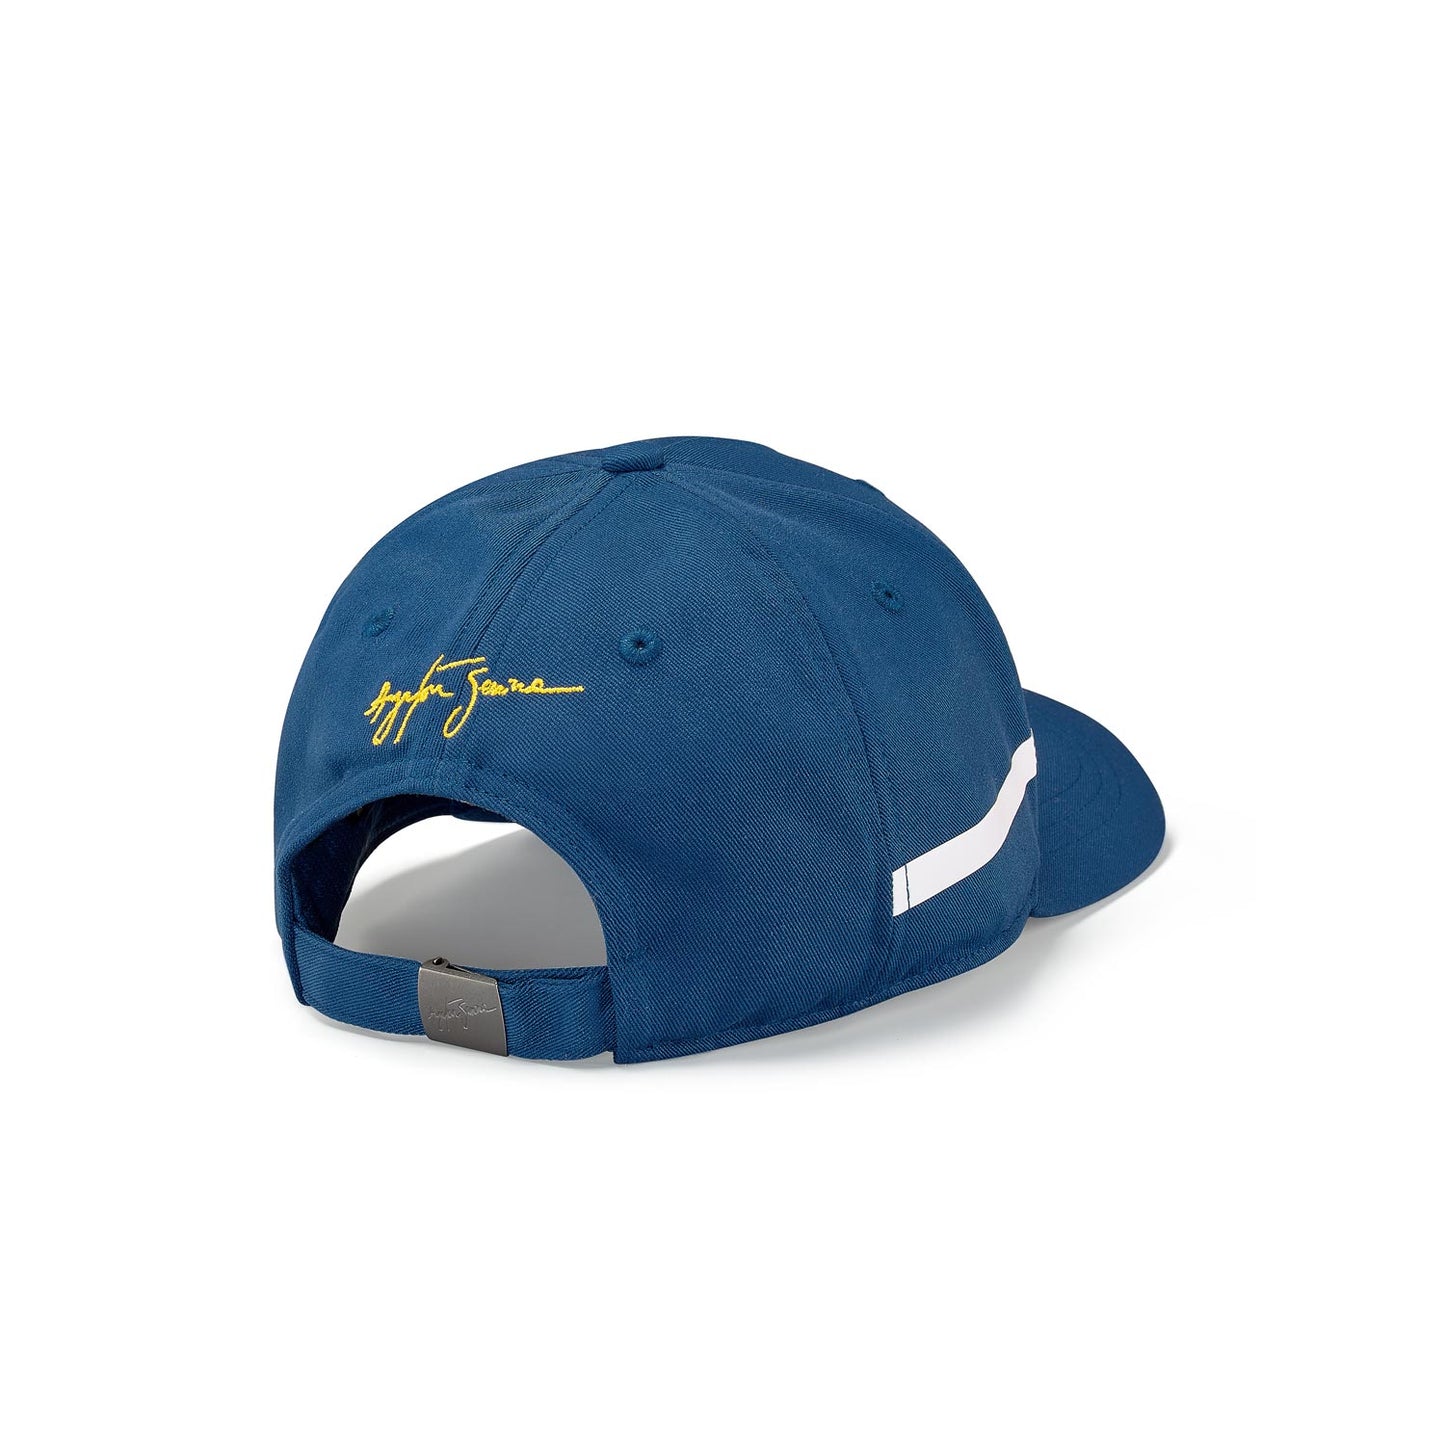 2022 Ayrton Senna Brazil Race baseball cap navy blue